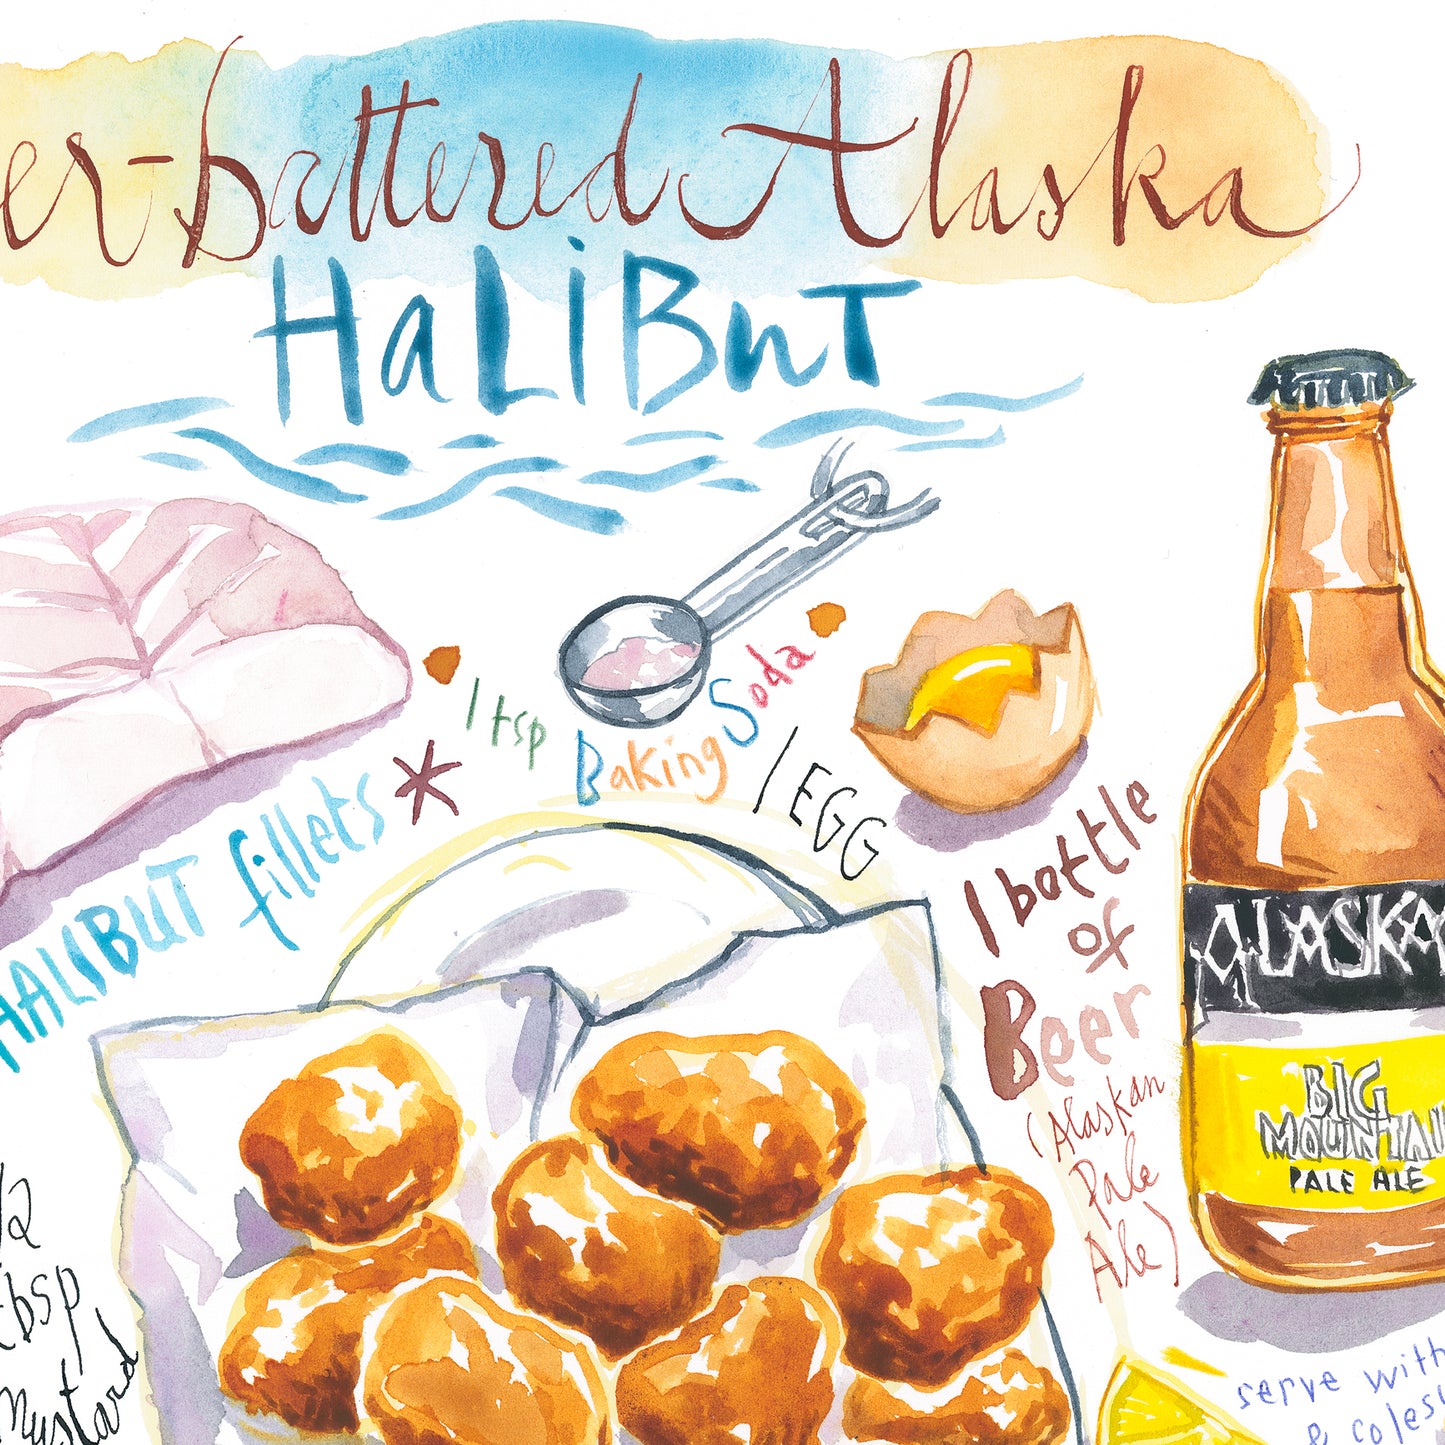 Beer-Battered Alaska Halibut recipe